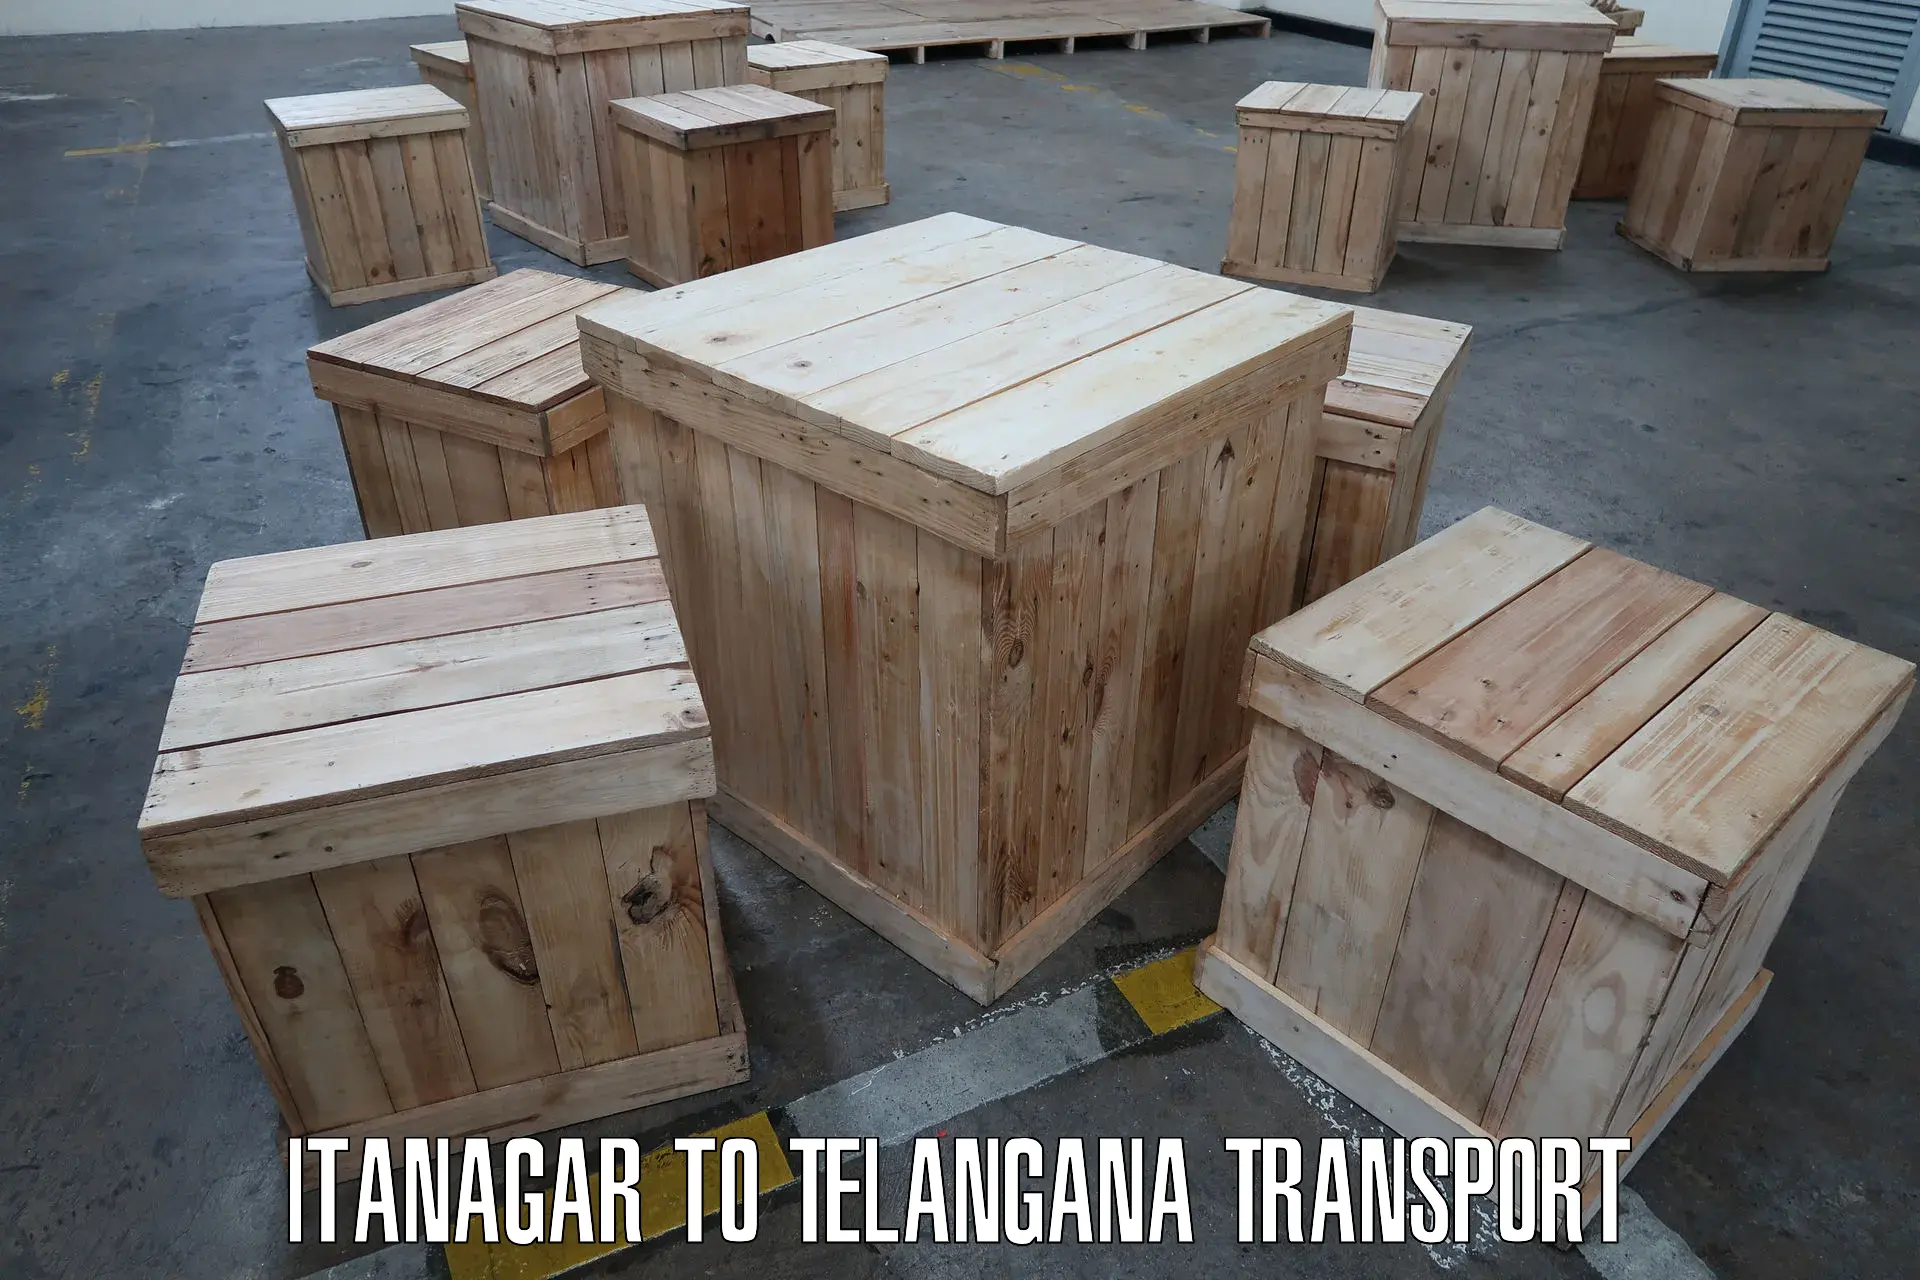 Nearest transport service in Itanagar to Eligedu